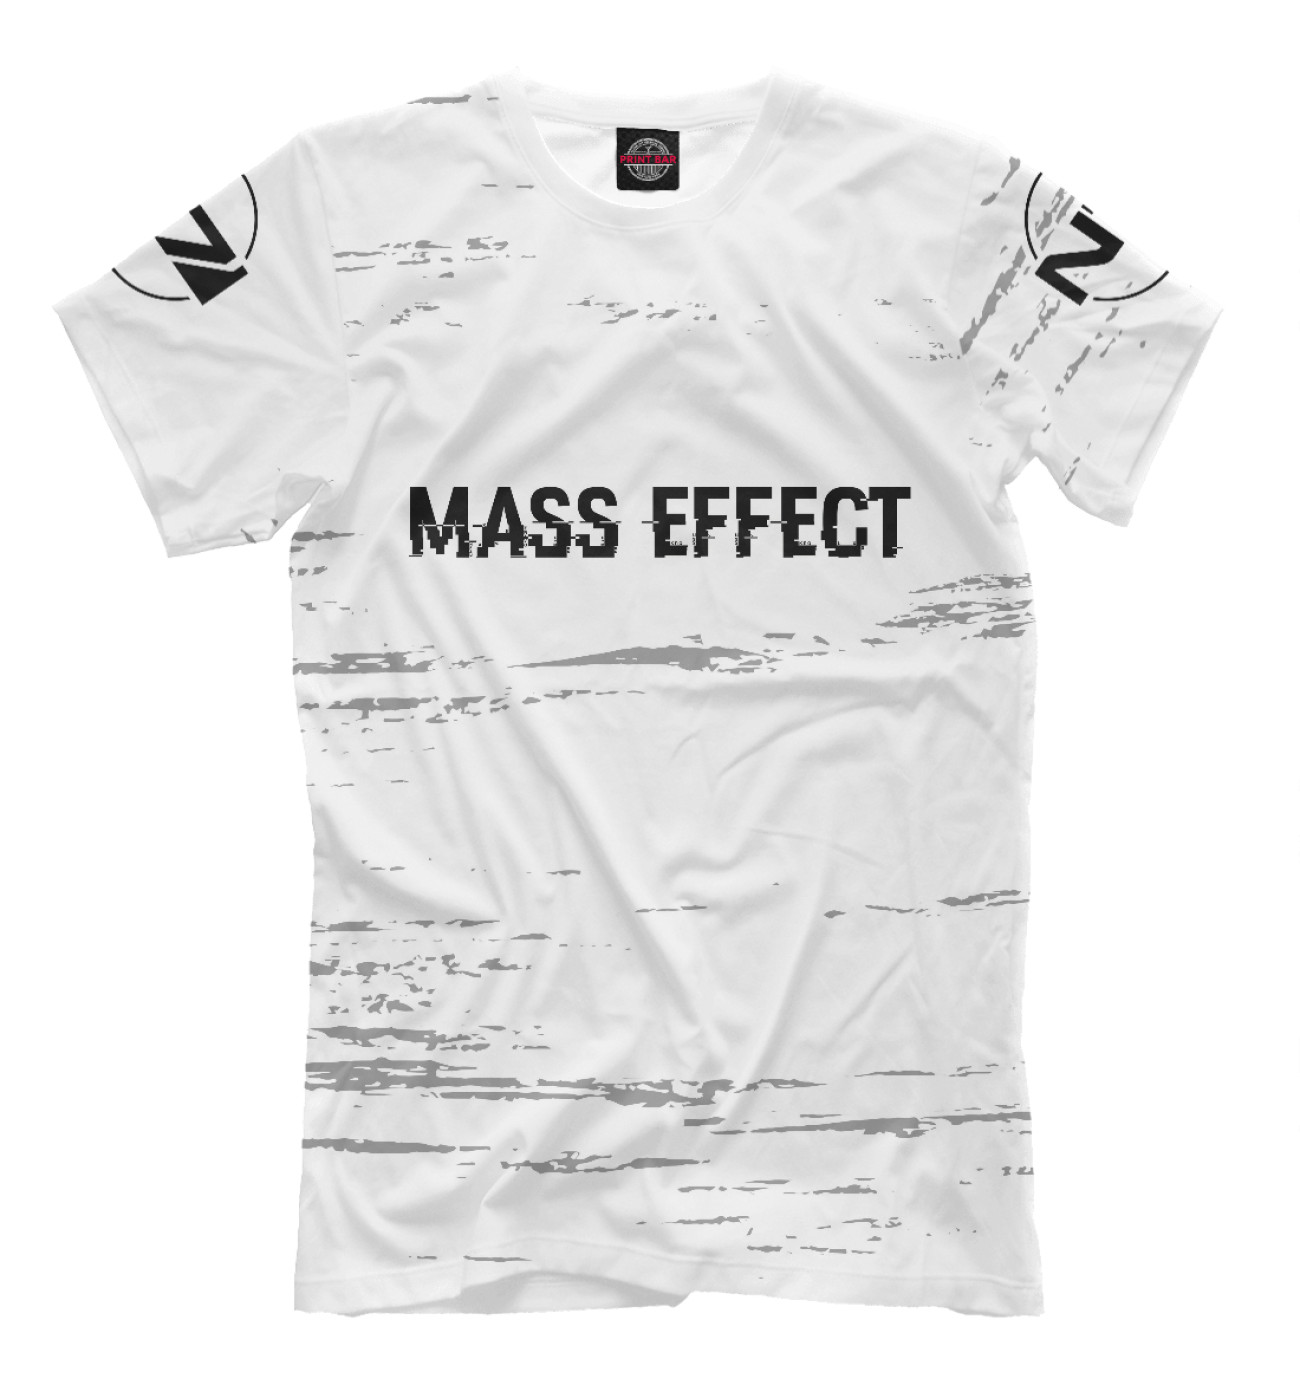 Мужская Футболка Mass Effect Glitch Black, артикул: MSE-537323-fut-2